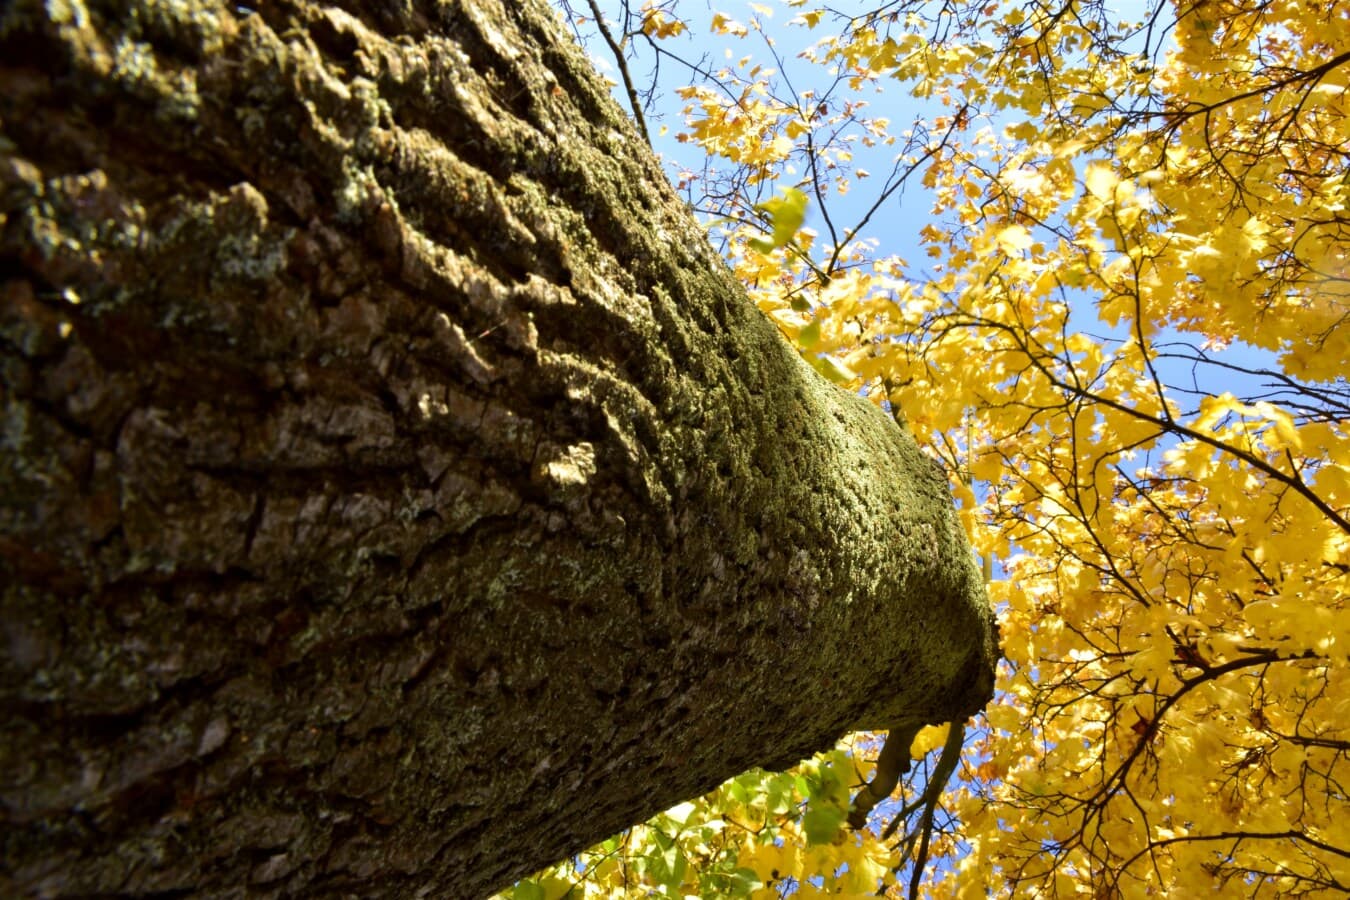 albero, grande, foglie gialle, stagione autunnale, marrone giallastro, corteccia, da vicino, abbaiare, foglia, foresta